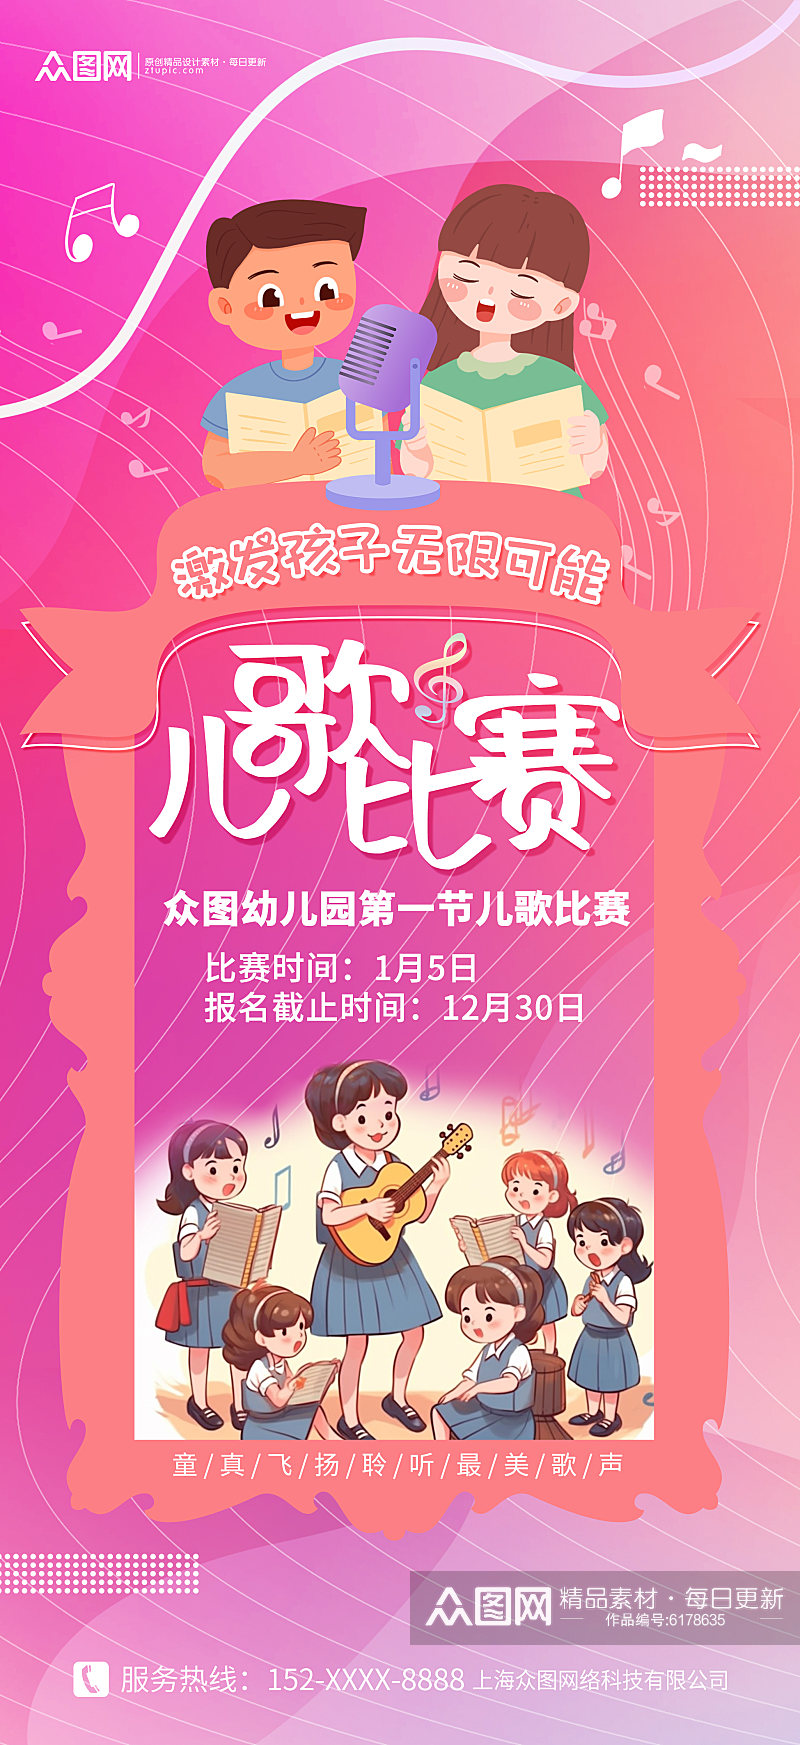 粉色可爱卡通儿童歌唱比赛活动海报素材